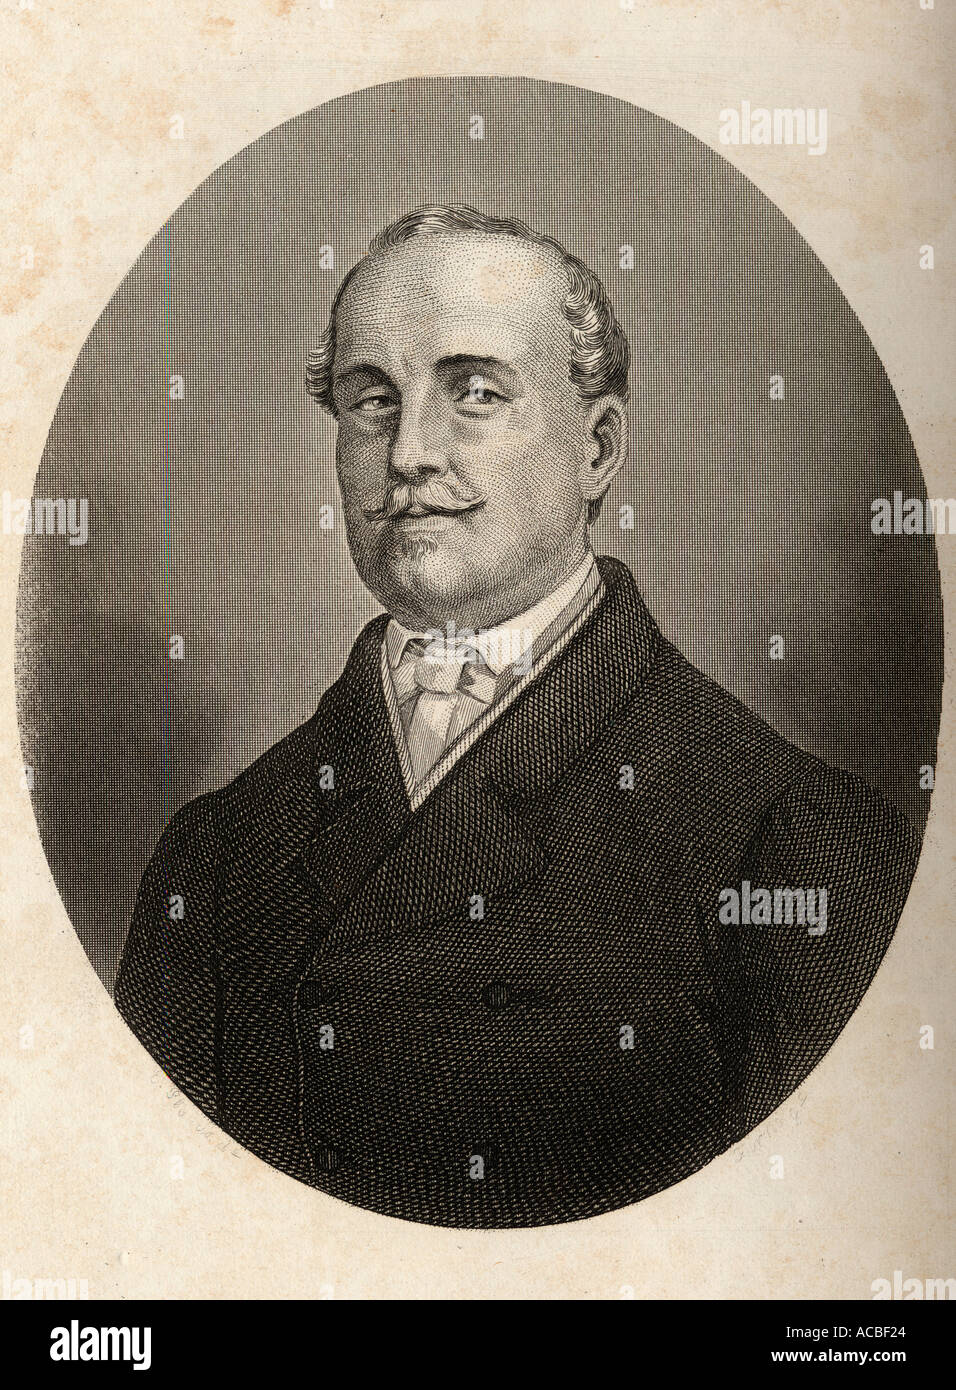 Leopoldo O'Donnell y Jorris, 1er duc de Tétouan, premier comte de Lucena, 1er vicomte de Aliaga, 1809 - 1867. L'Espagnol Général et homme d'État. Banque D'Images